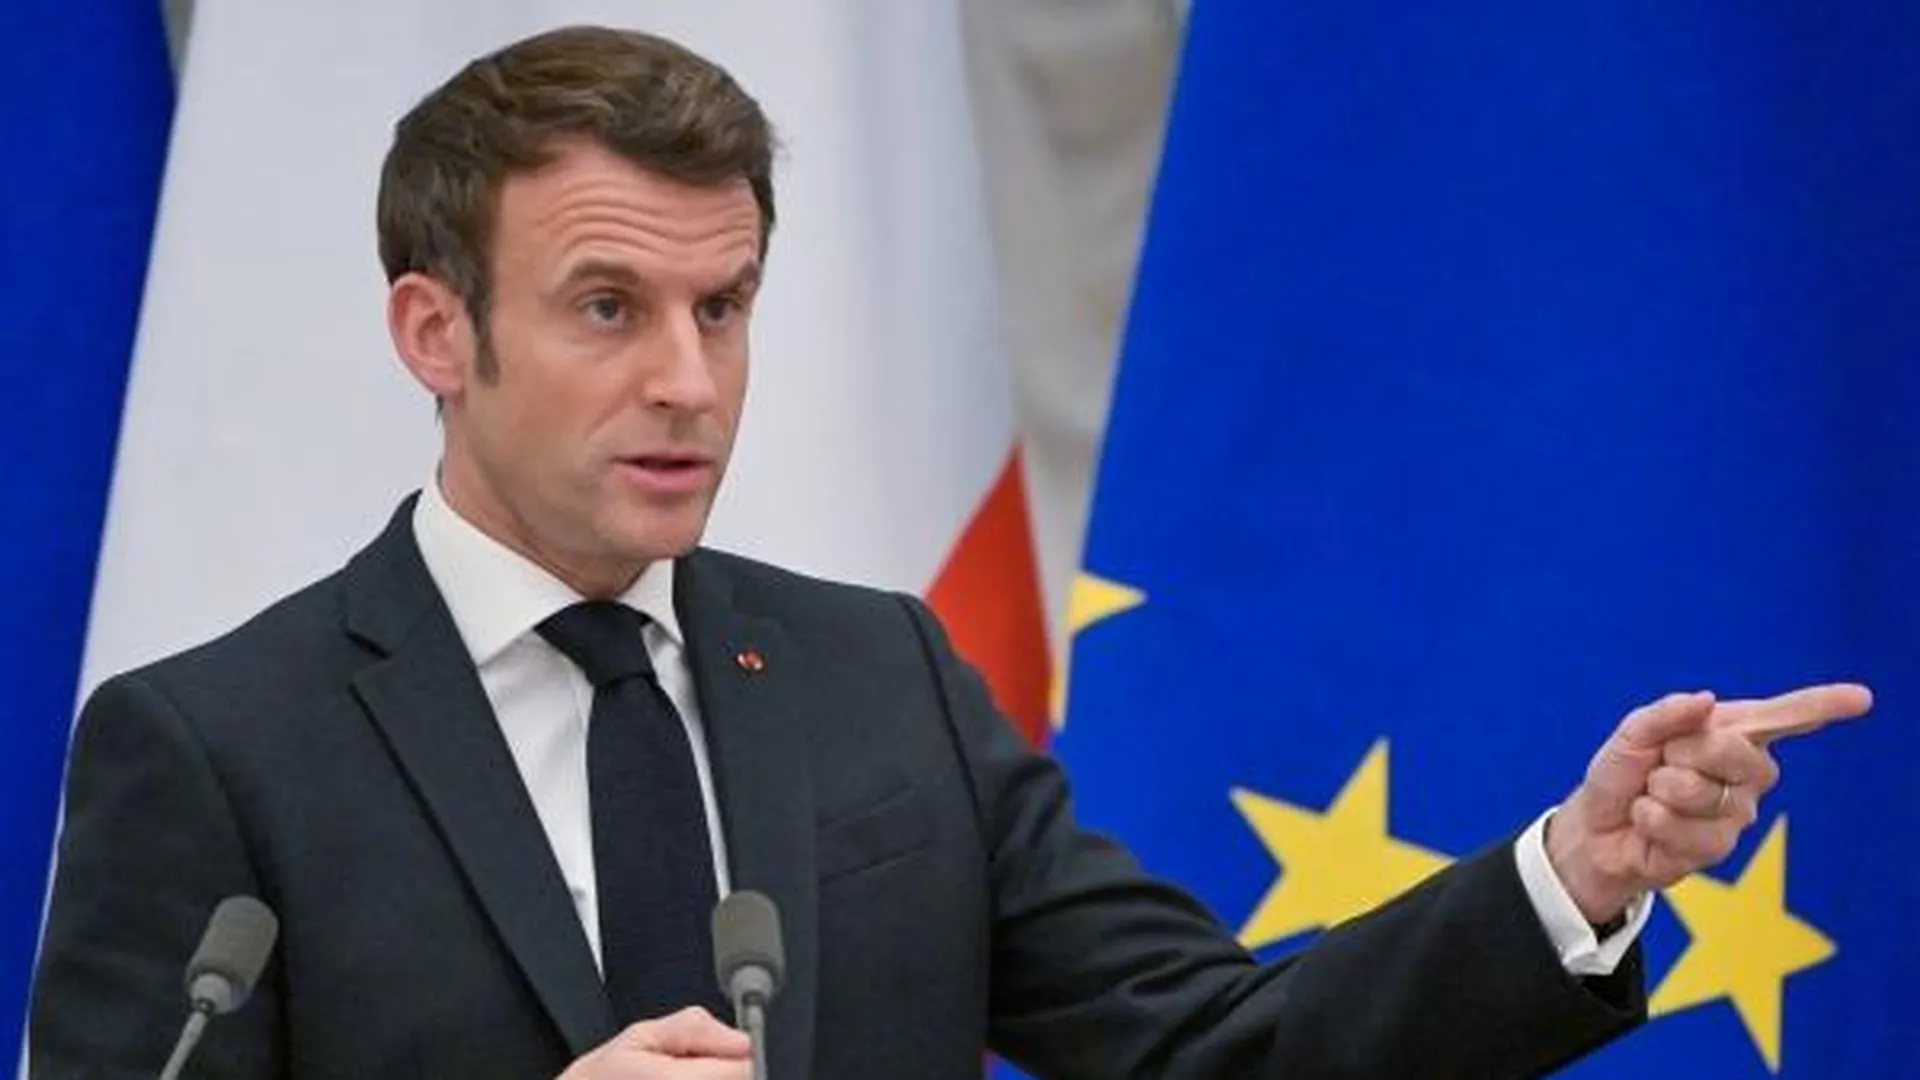 Горящий дом Макрона. Президент Франции постарается поднять рейтинг на Украине